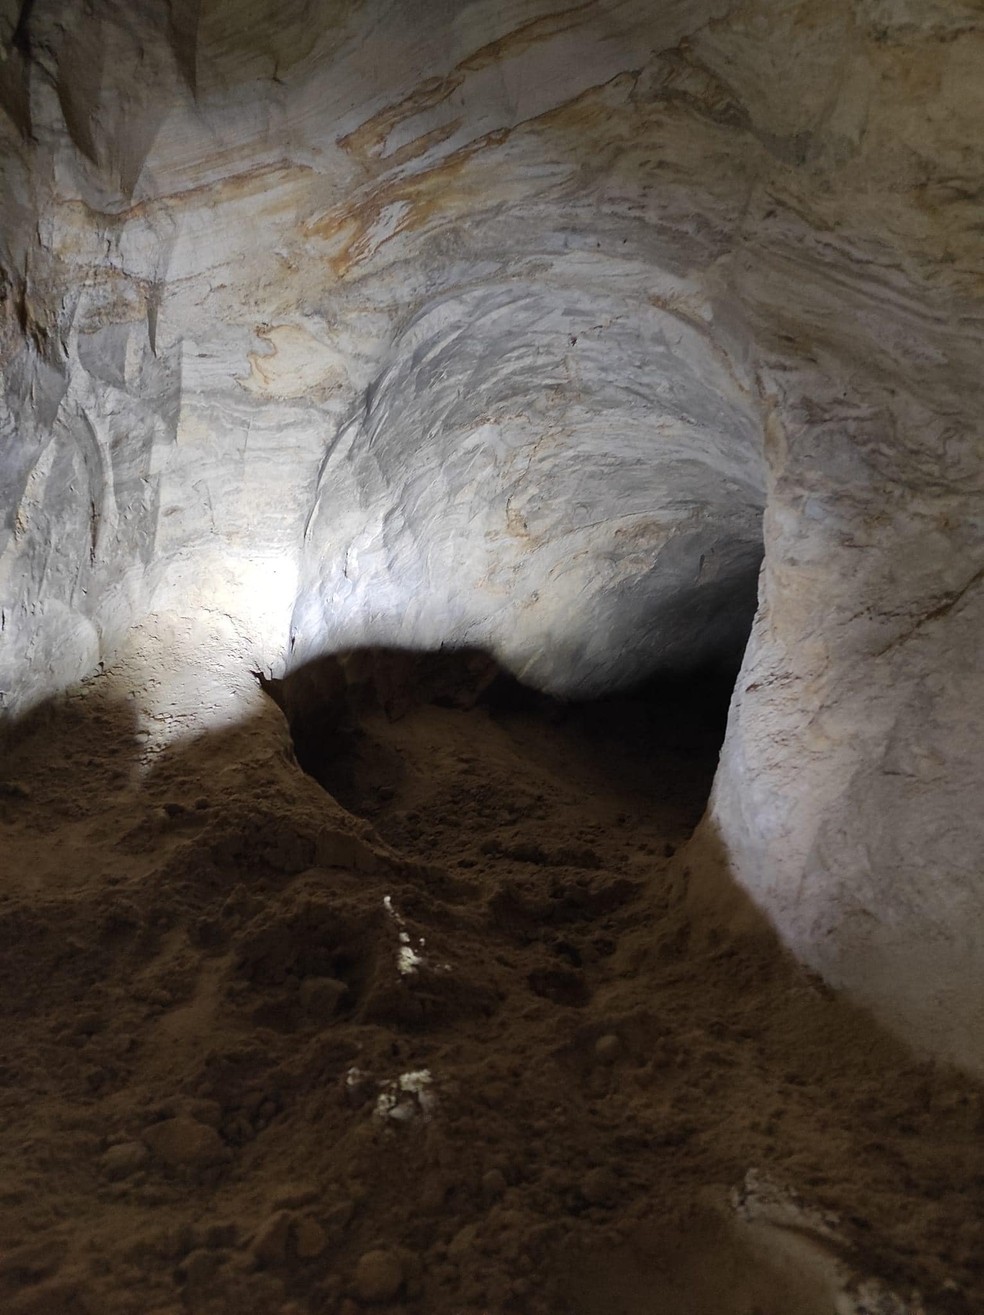 Entrada no antigo sistema de cavernas onde foram descobertas cerâmicas e símbolos  — Foto: Reprodução/Facebook/Дмитро Перов